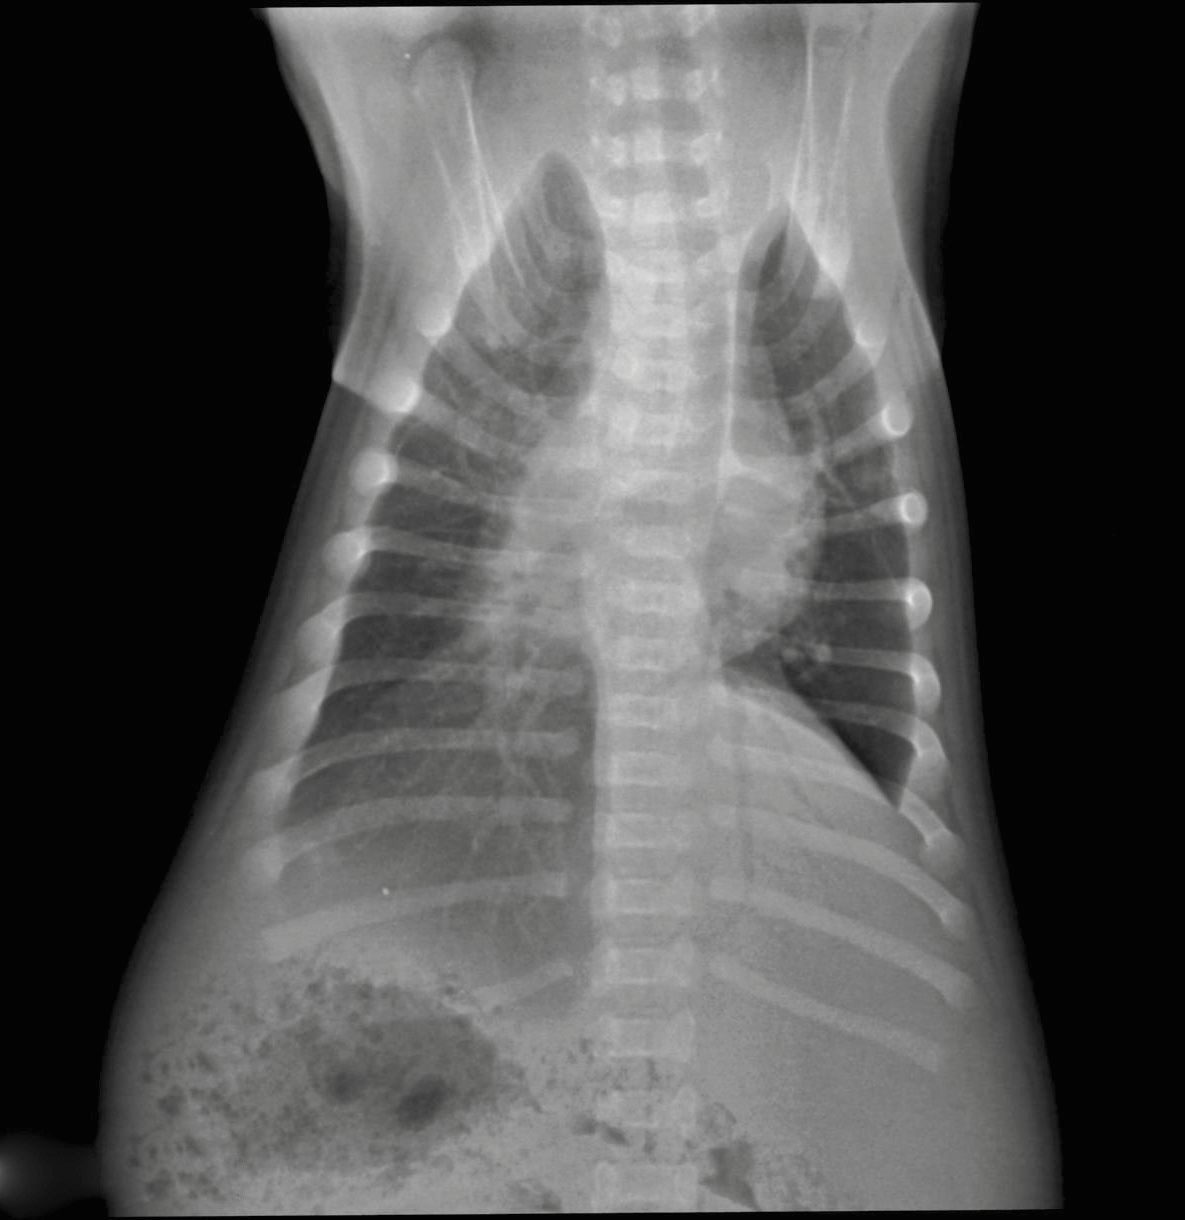 Radiographie DV montrant le thorax d’un chiot croisé de 7 jours